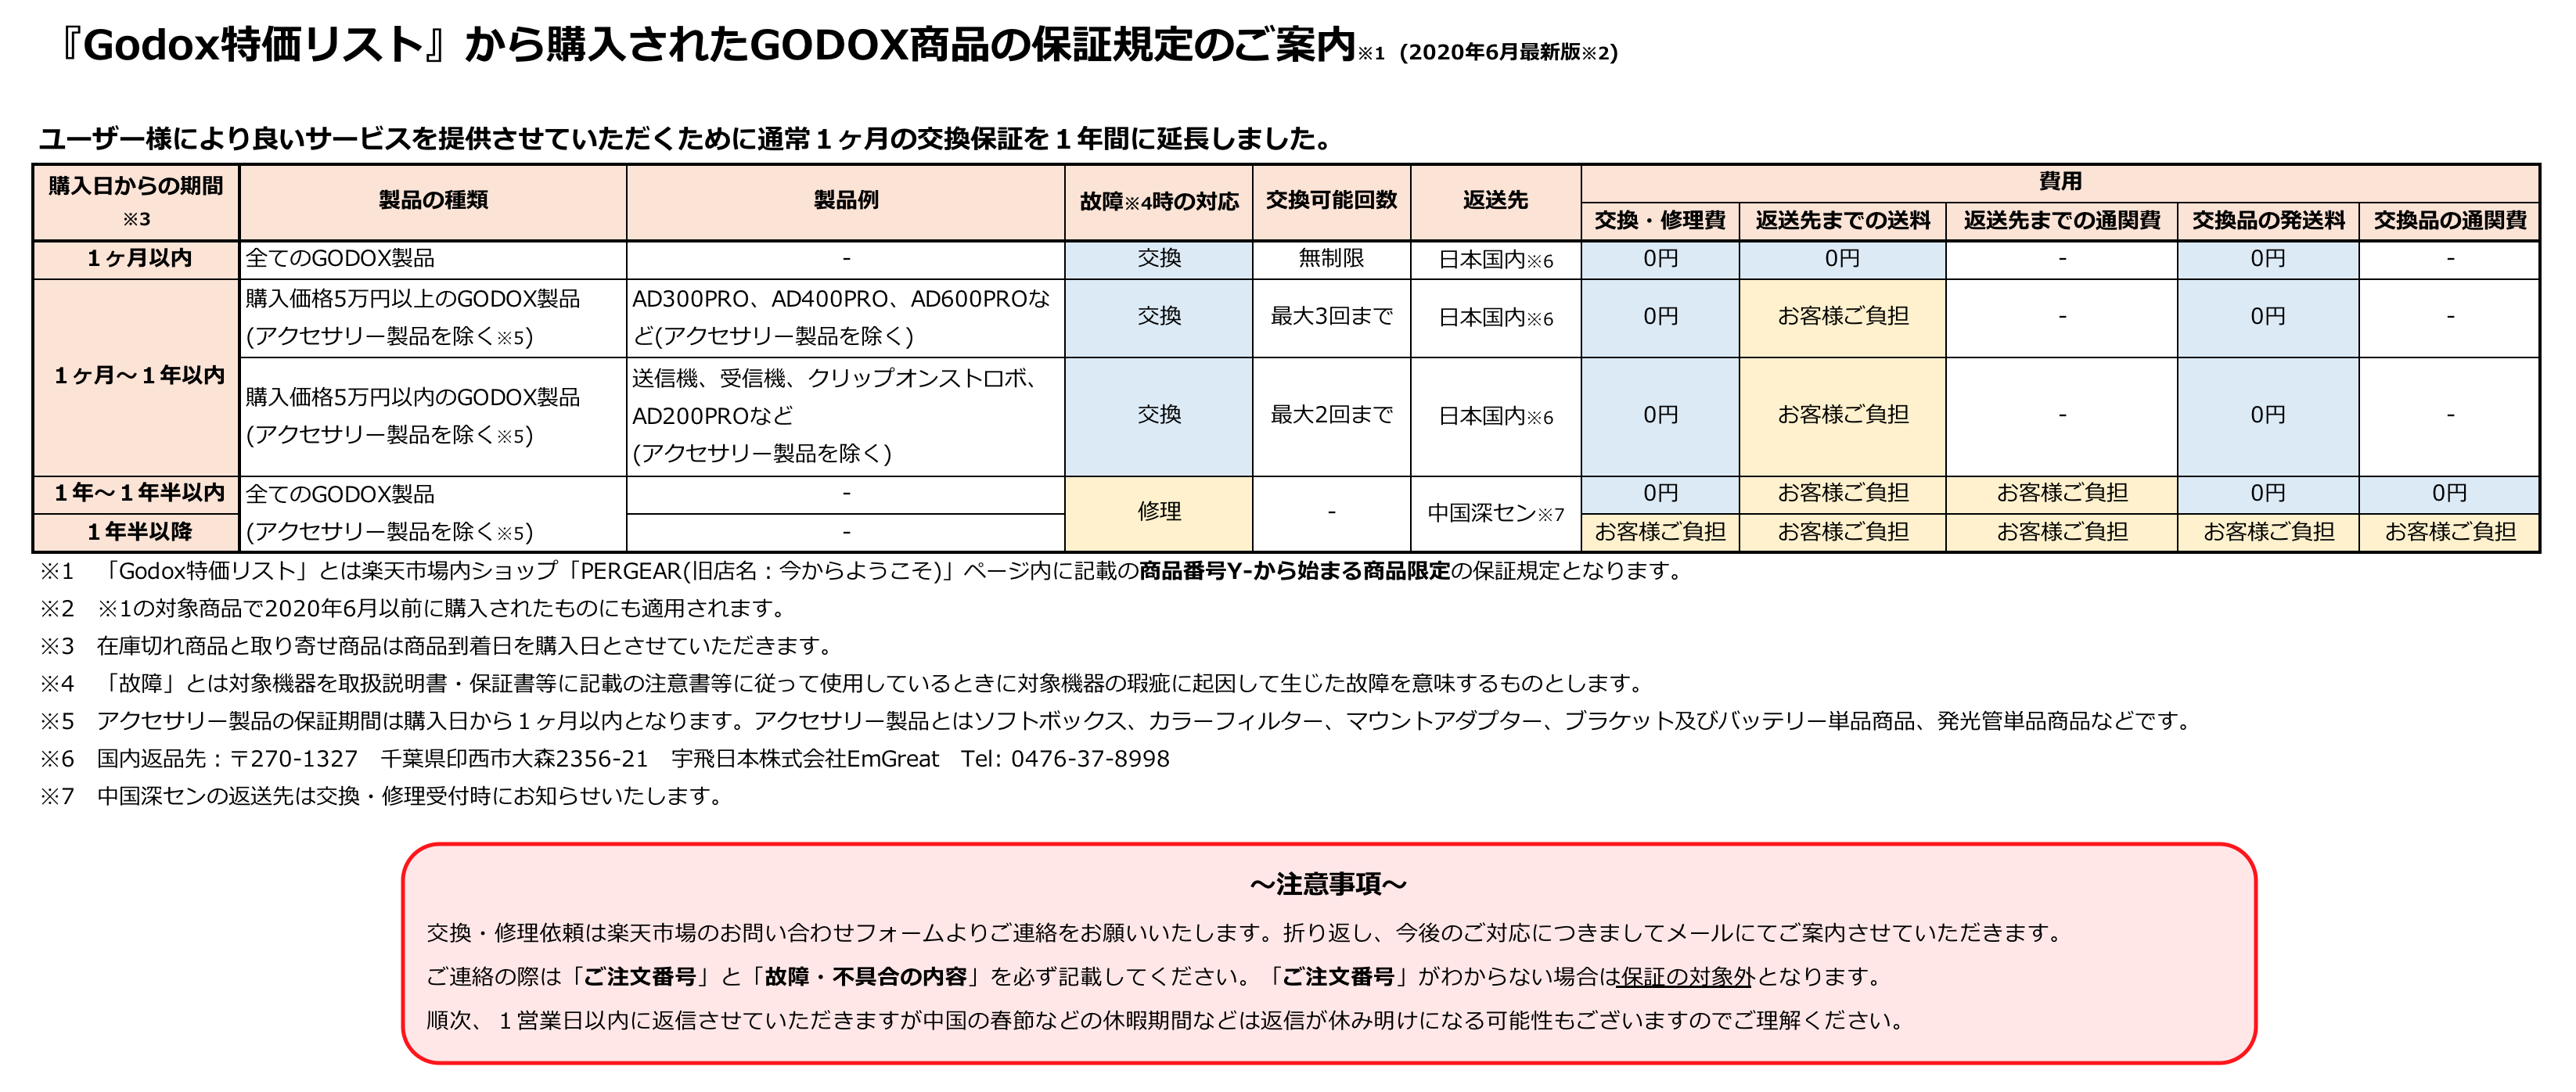 GODOX特価リストの新保証規定